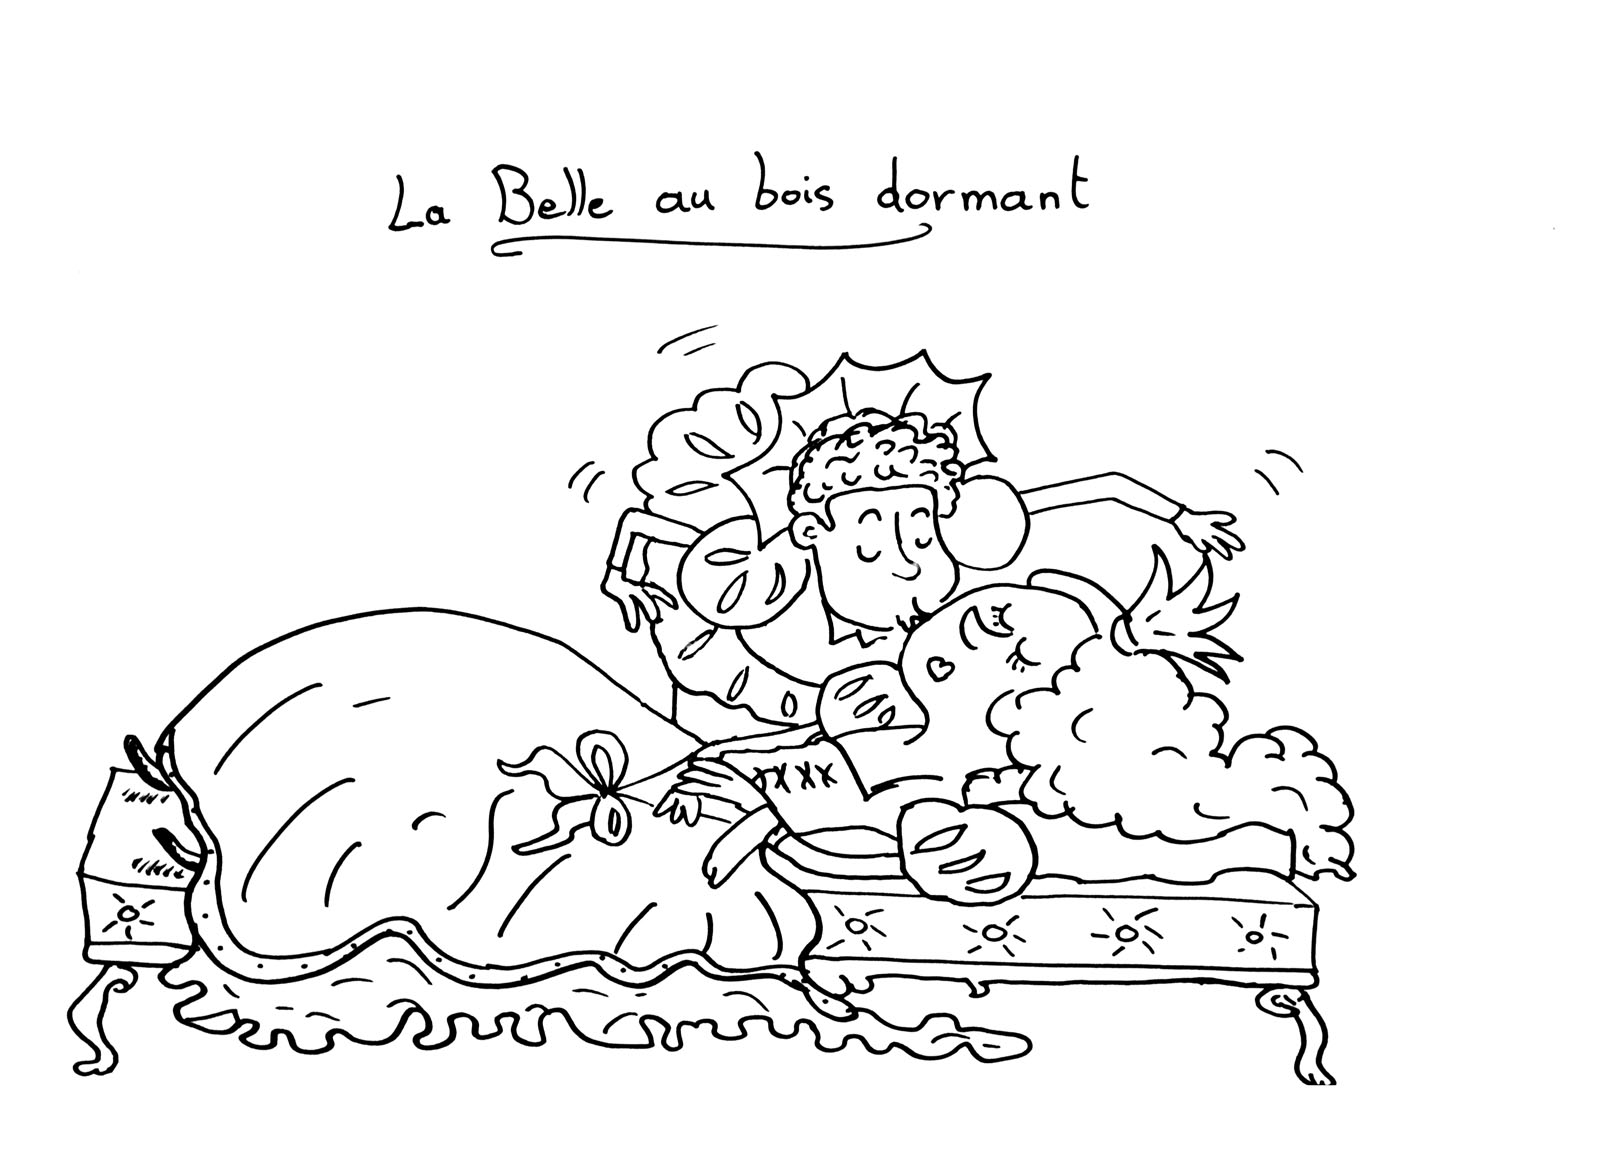 Coloriage original de La Belle au bois dormant : le bisou du Prince charmant !